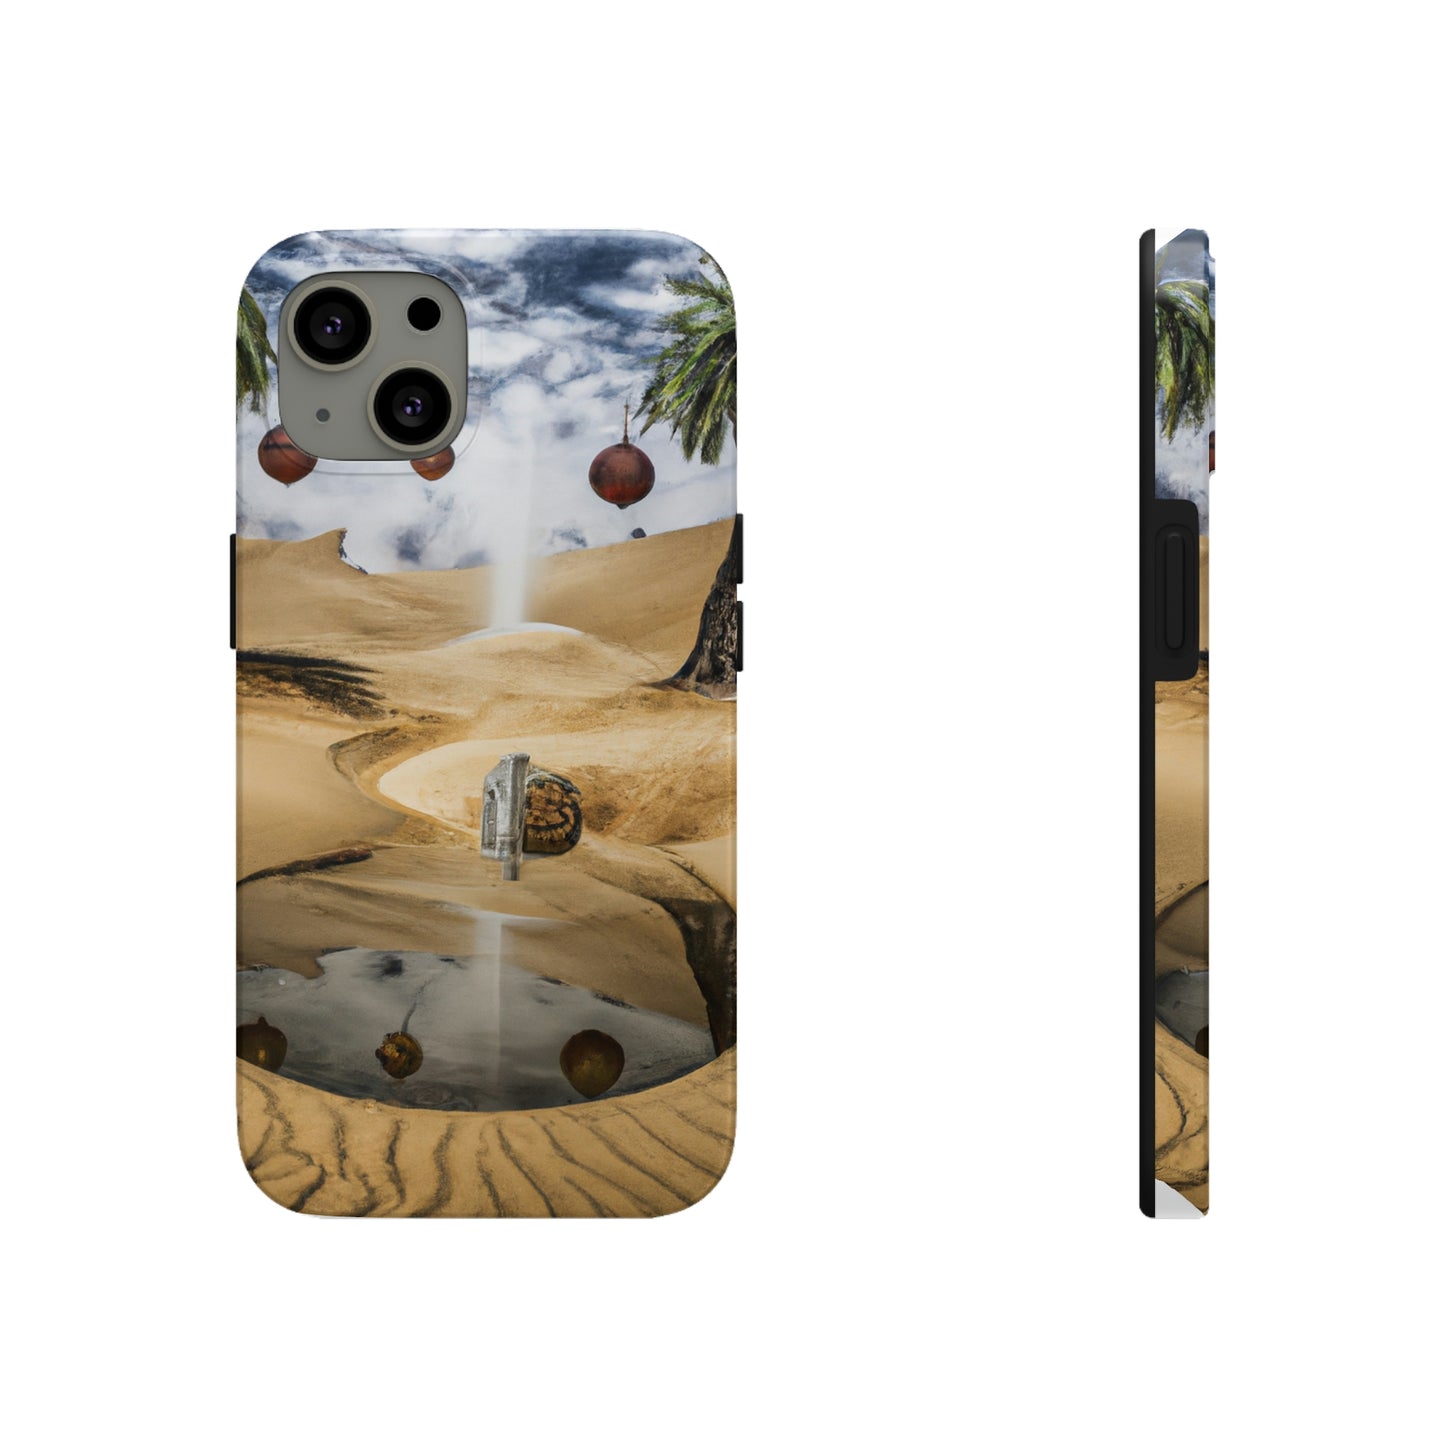 Das Trugbild des Wüstensandes - Die Alien Tough Phone Cases